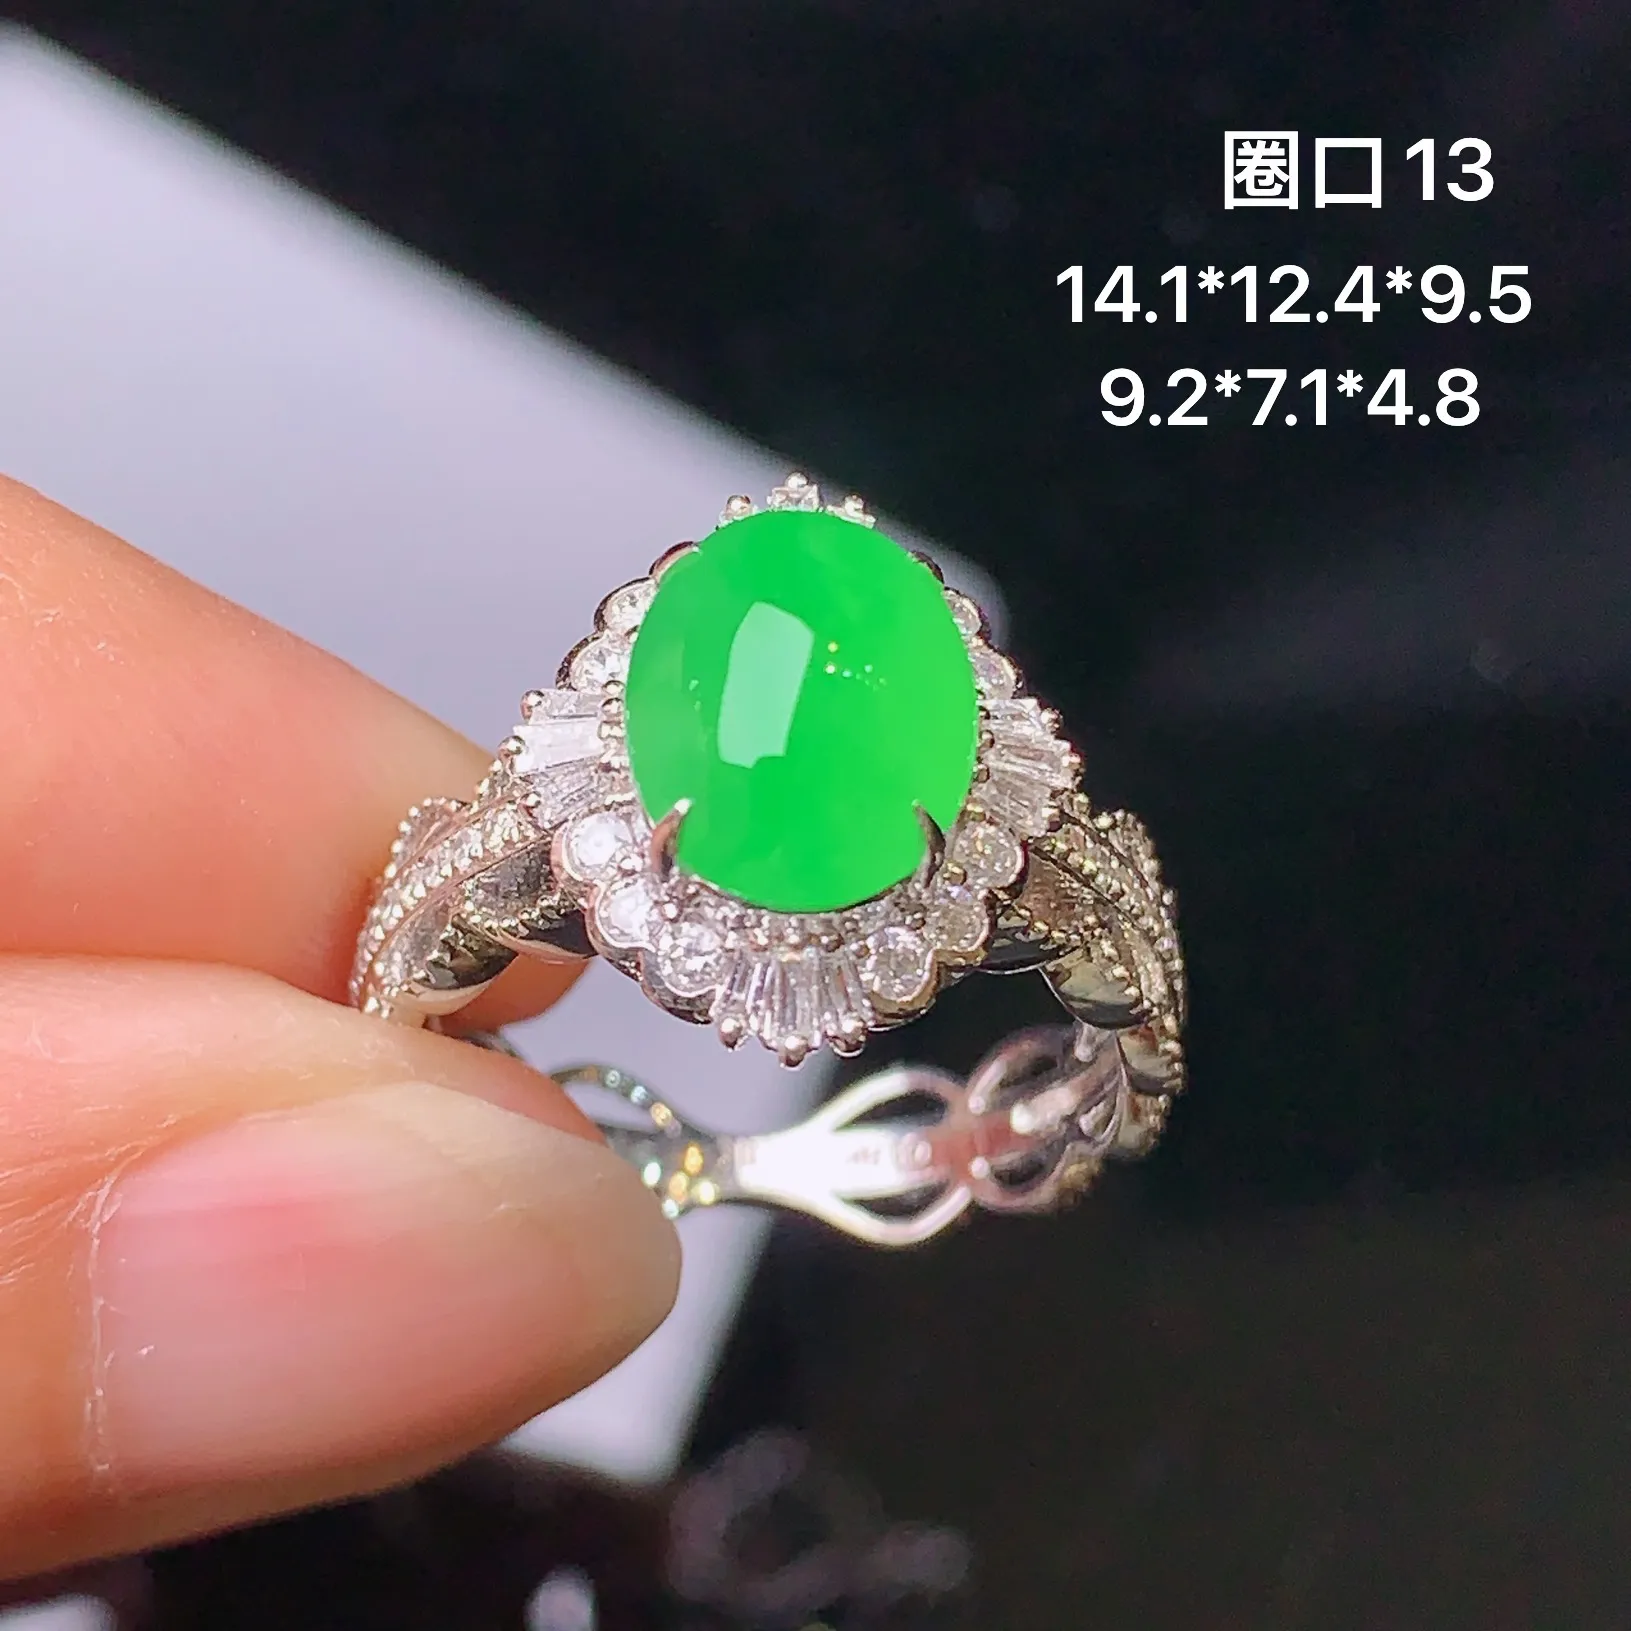 18k金钻镶嵌满绿蛋面戒指 玉质细腻 色泽艳丽 款式新颖 圈口13 整体尺寸14.1*12.4*9.5